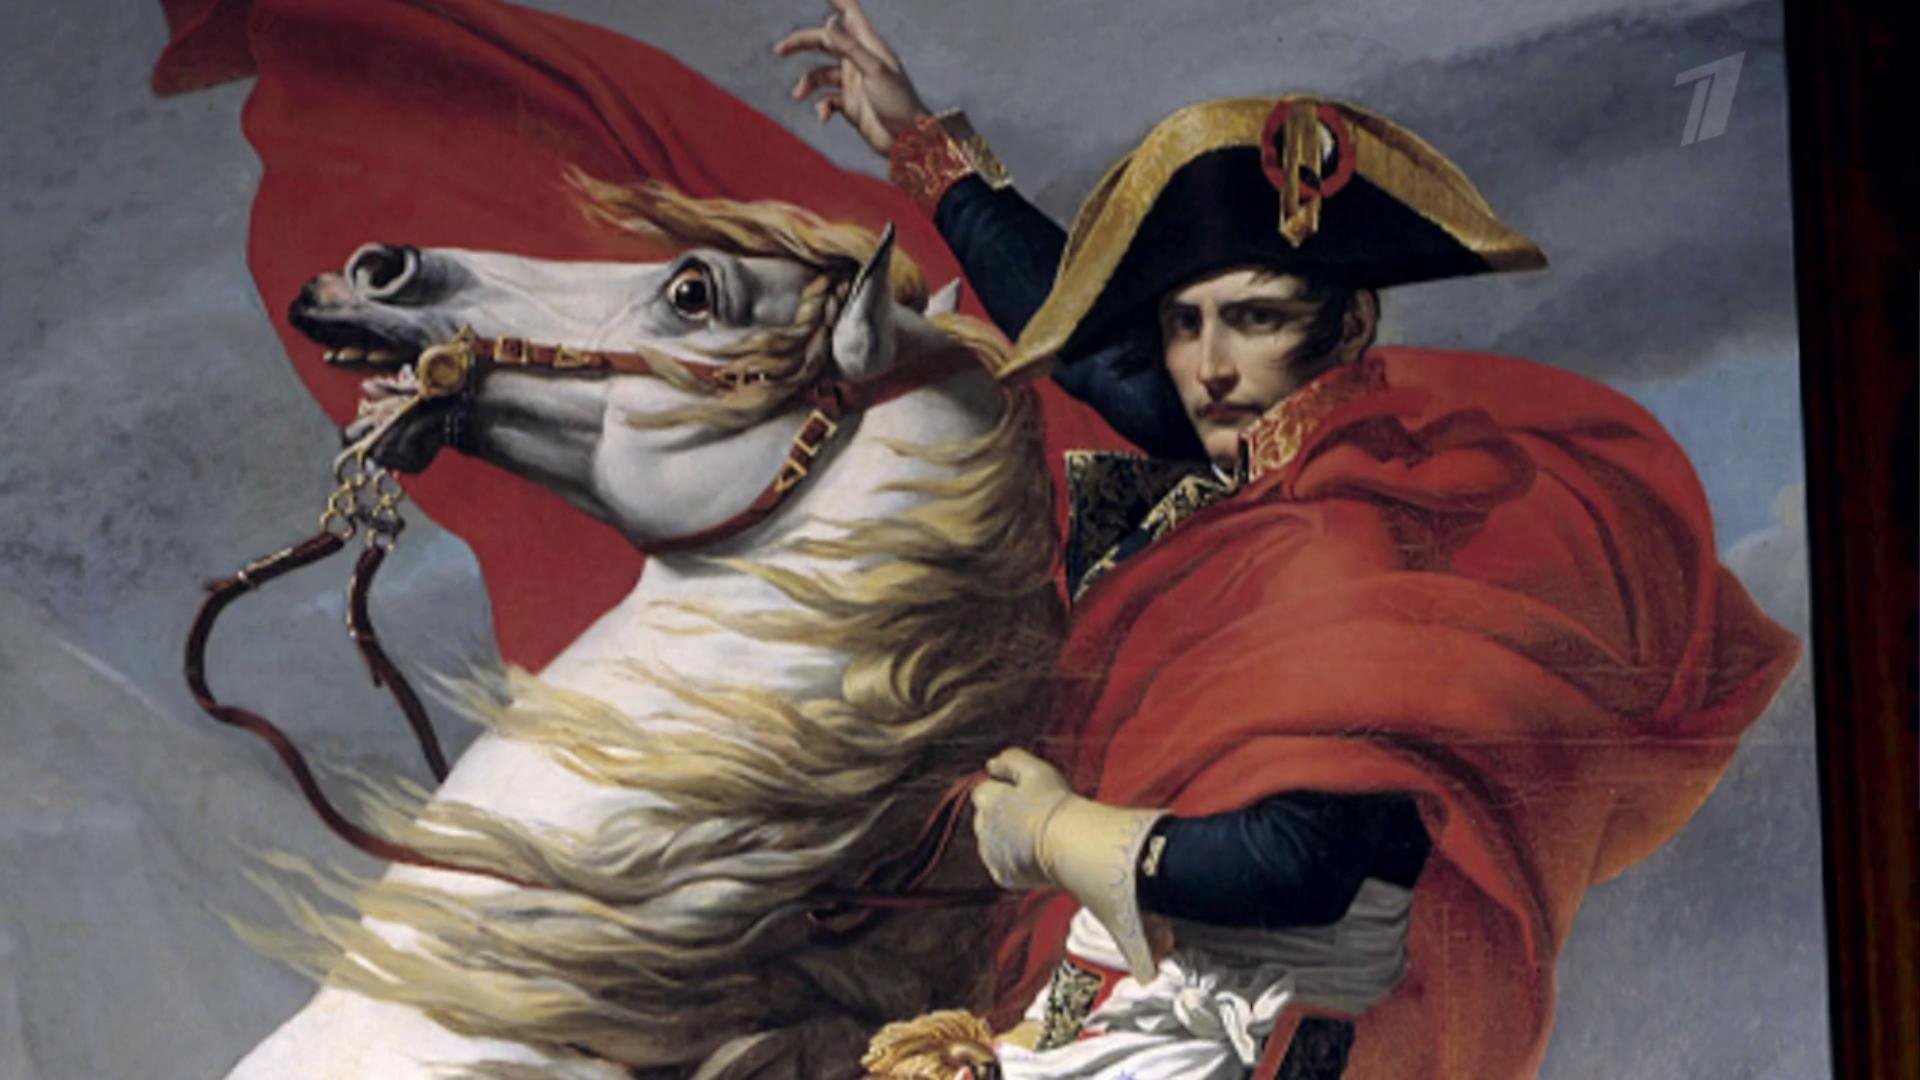 Премьера документального фильма. К 200-летию со дня смерти. «Наполеон: Путь императора»